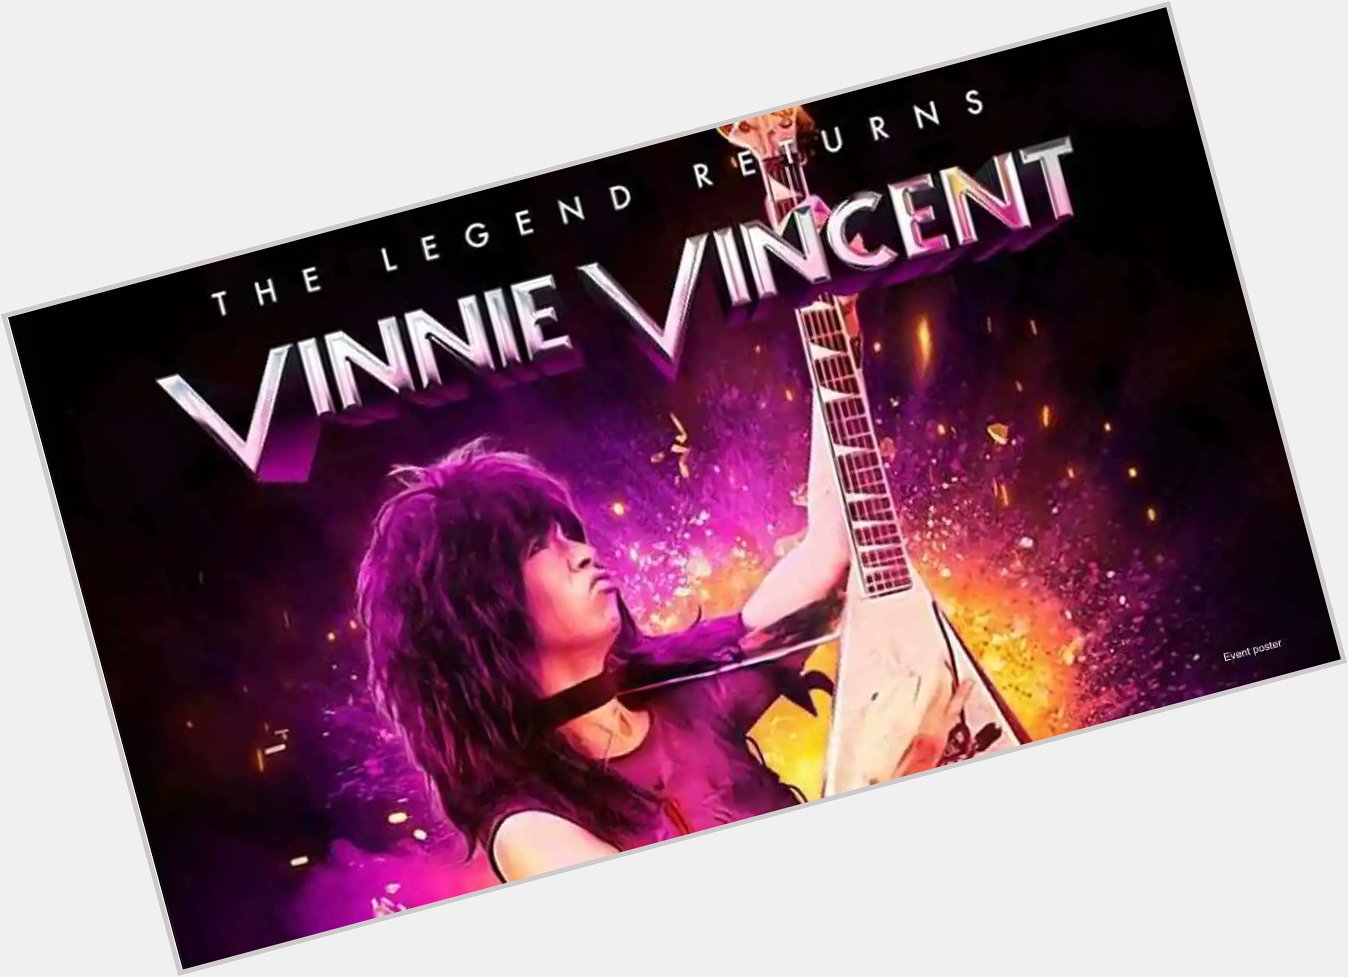 Vinnie Vincent, Happy birthday. 